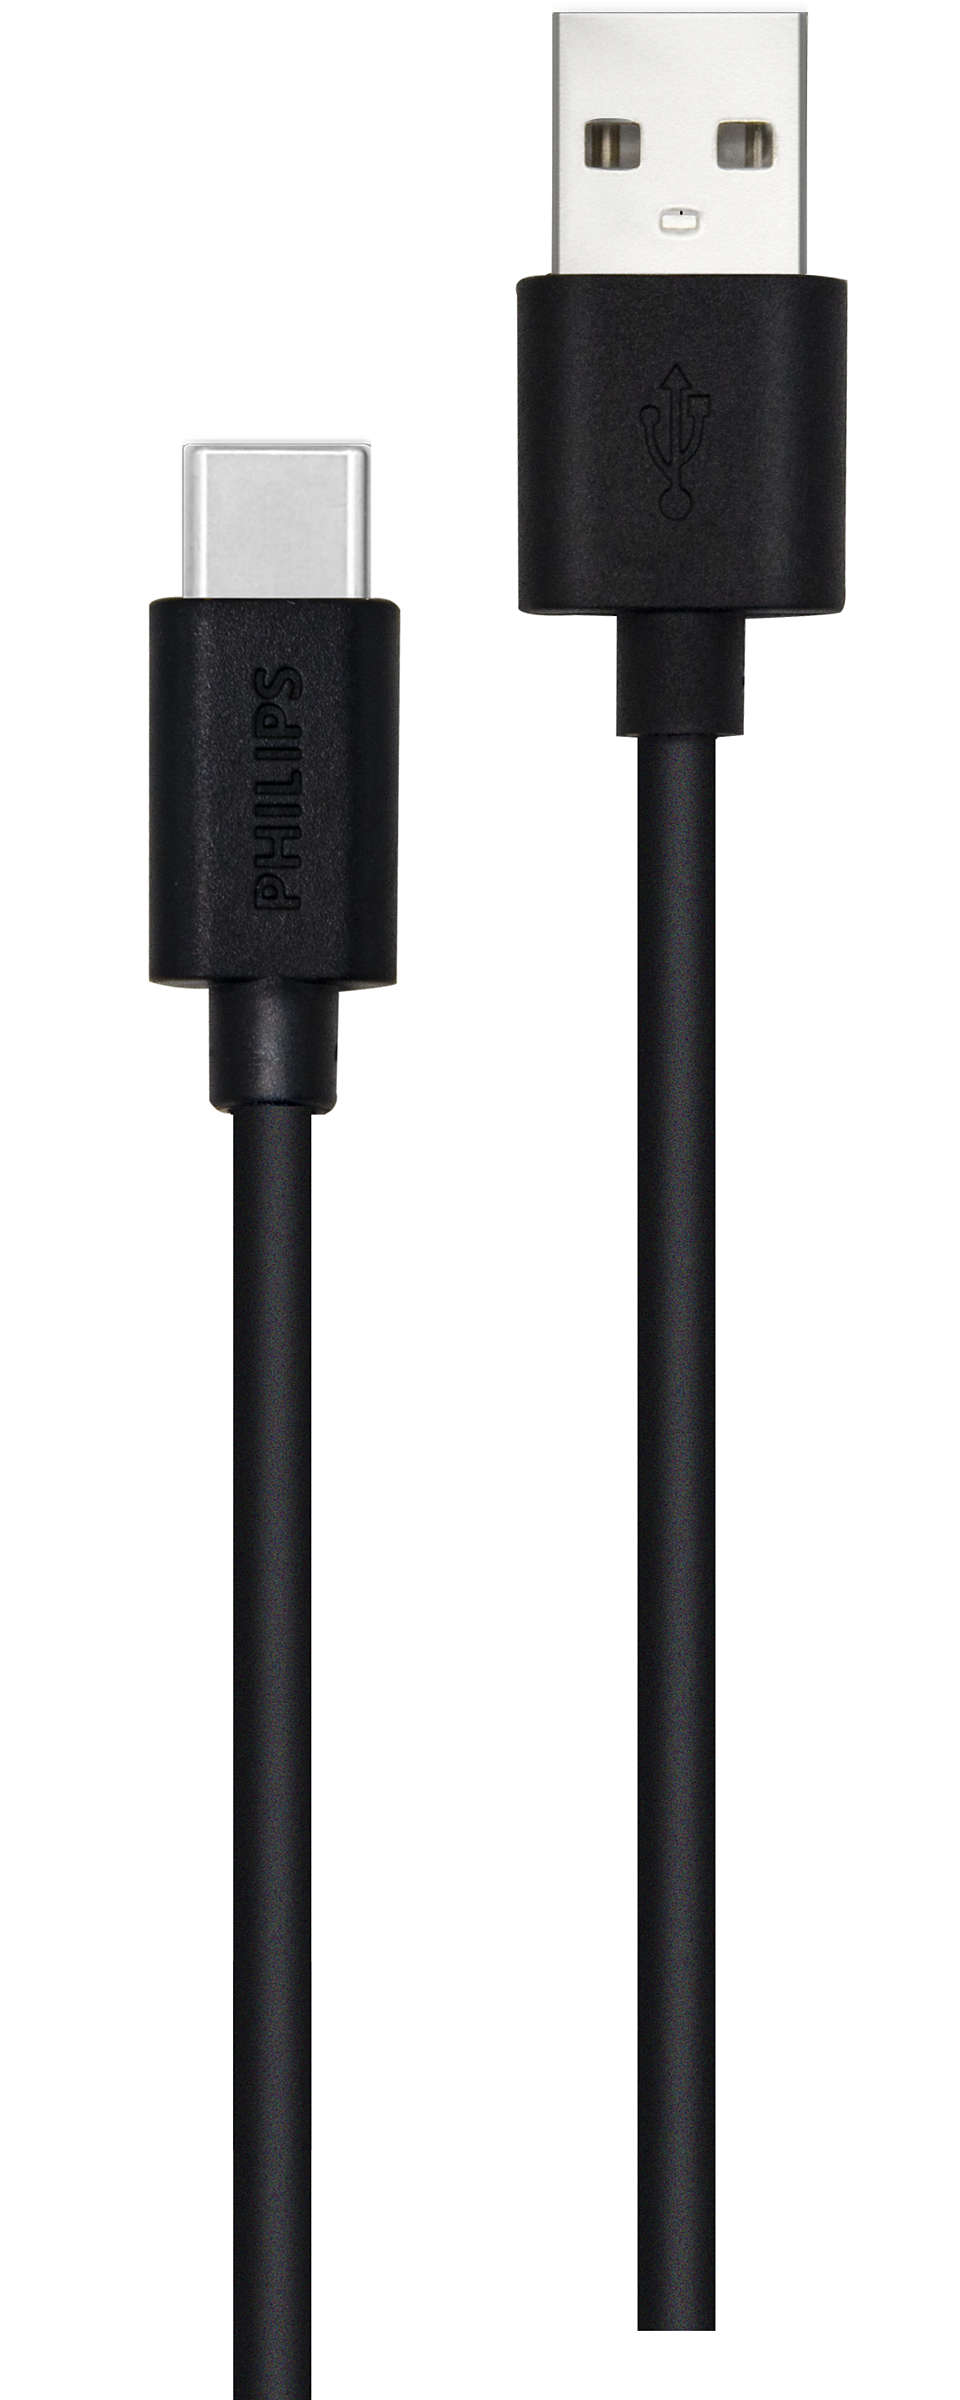 Kabel USB-A ke USB-C 2 m